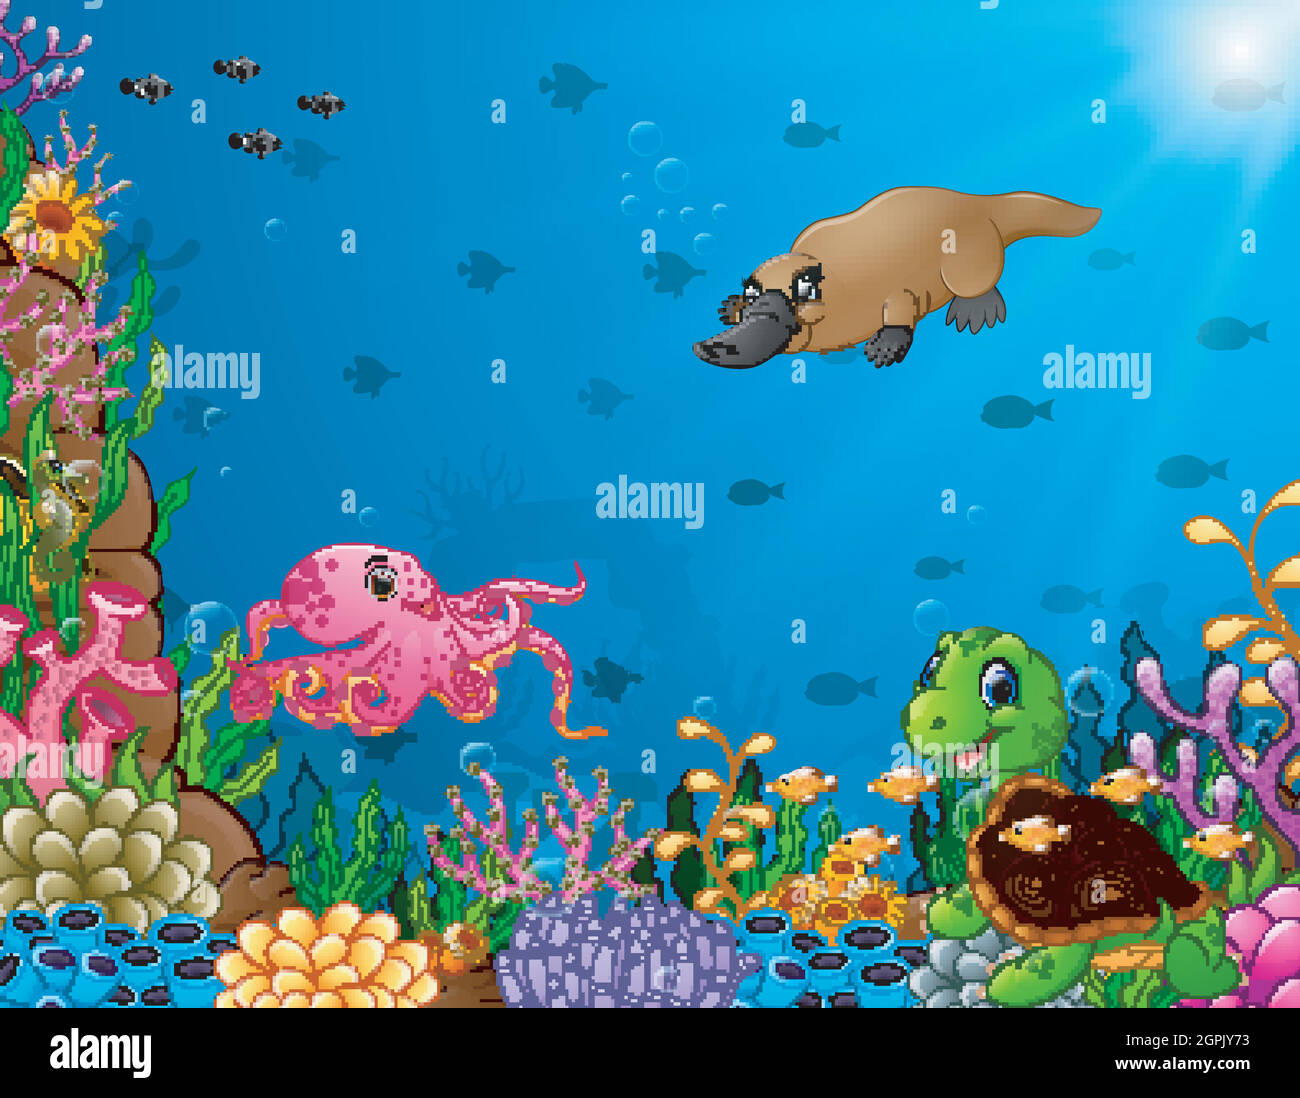 Dessin animé animal tropical avec beau monde sous-marin Illustration de Vecteur